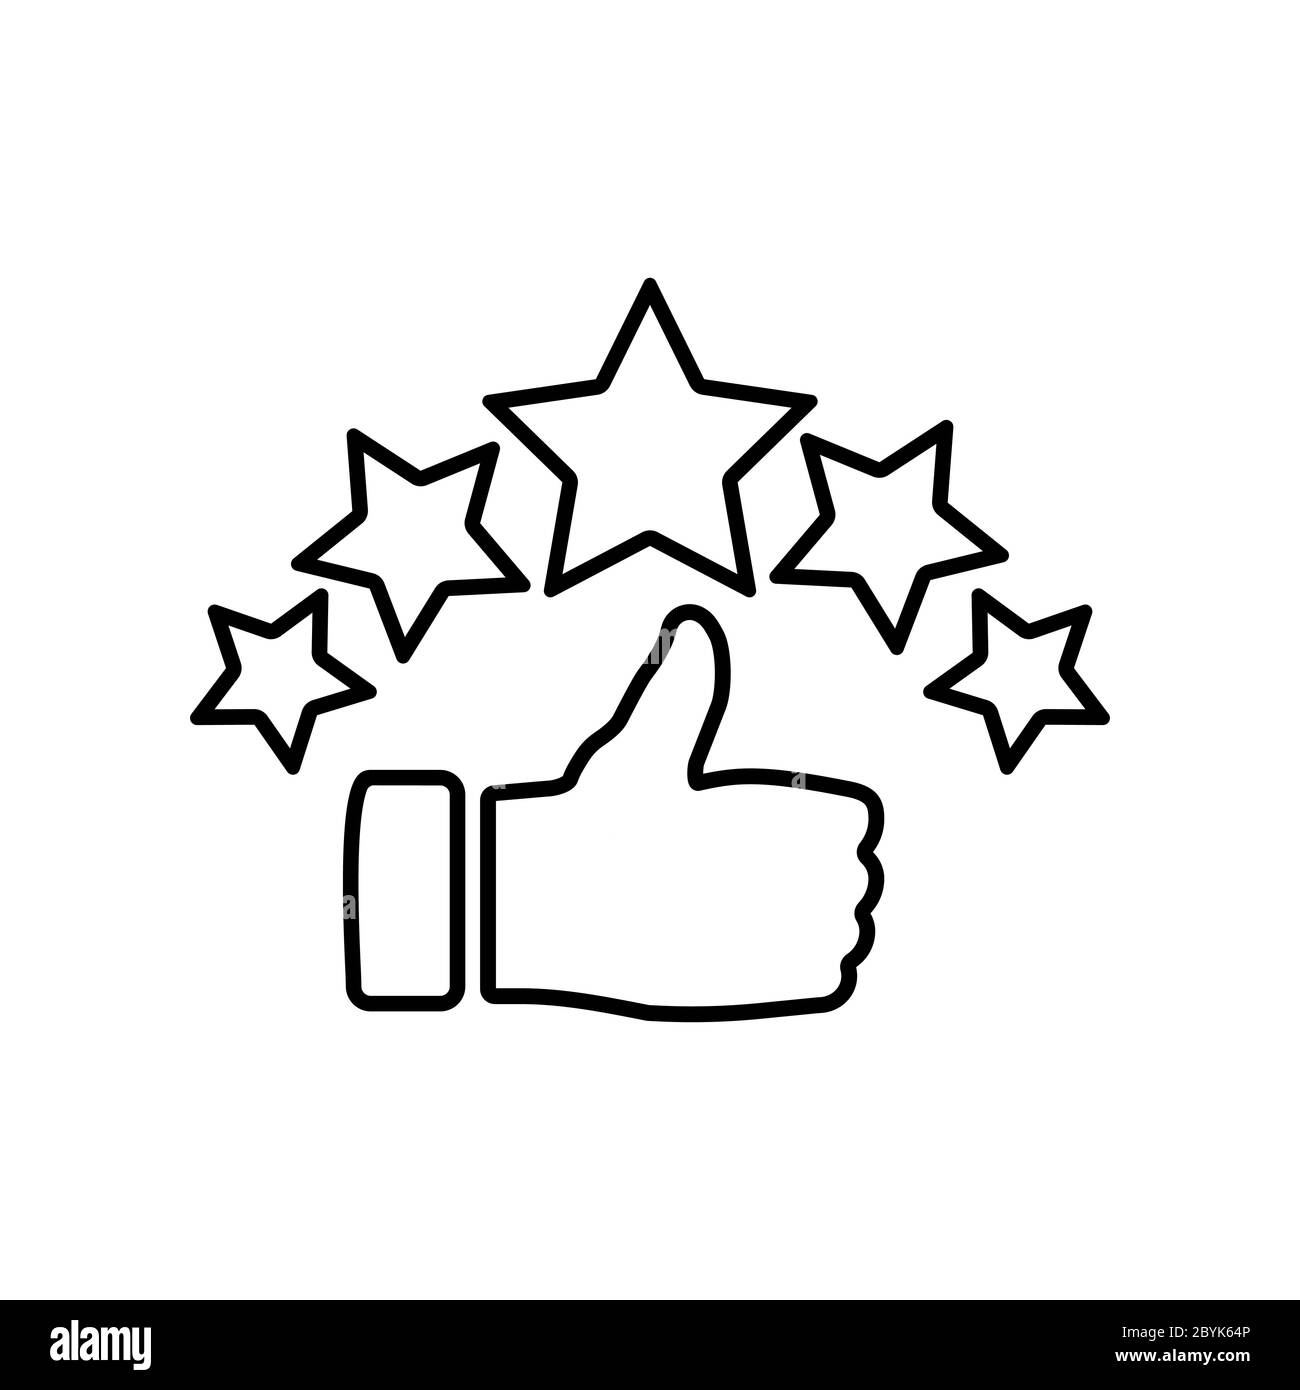 Classificazione dei prodotti cinque stelle, classificazione della qualità, feedback, logo piatto con icone premium in nero su sfondo bianco isolato. Vettore EPS 10 Illustrazione Vettoriale